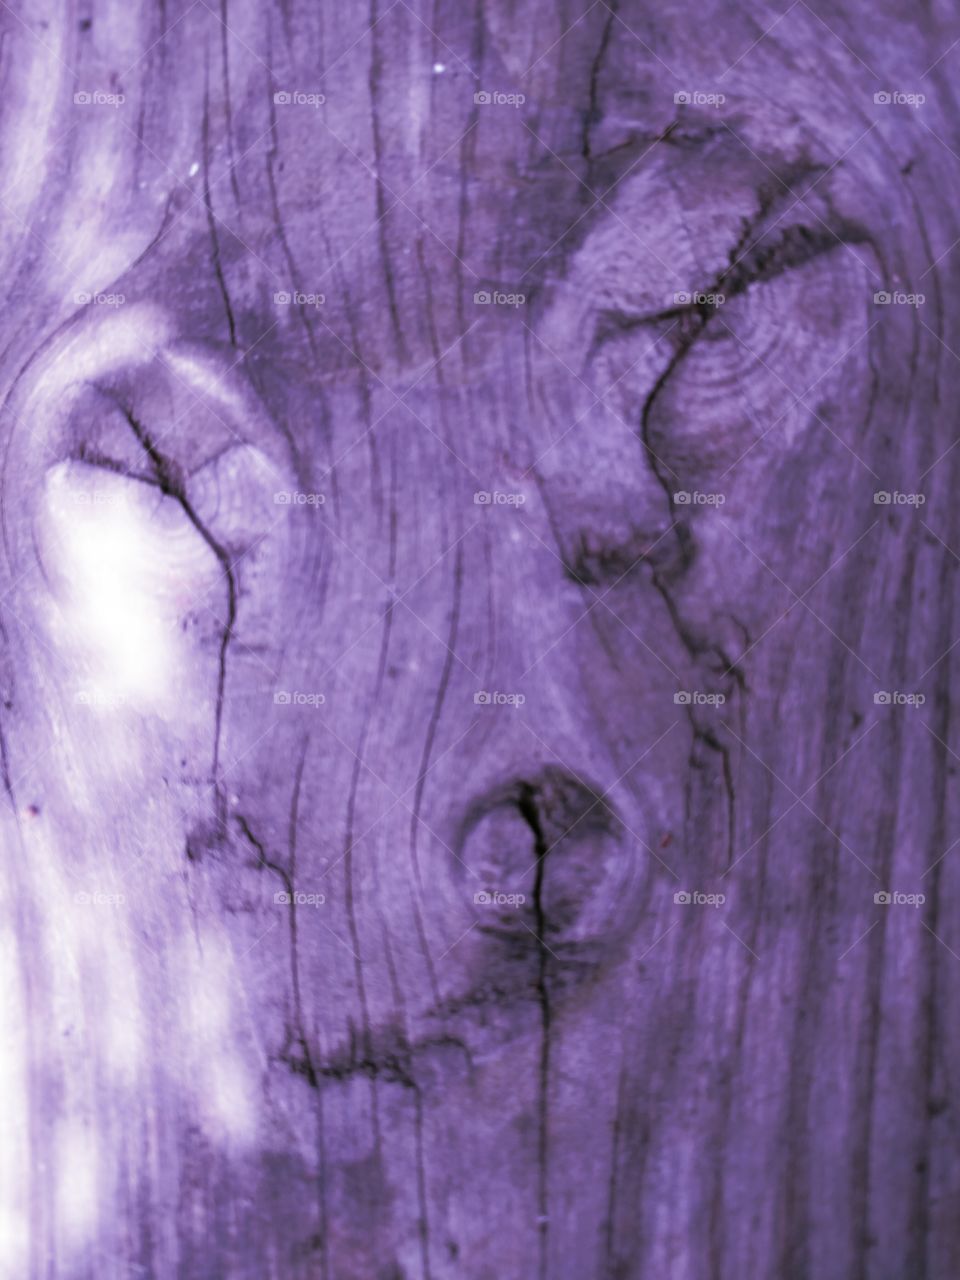 purple wood